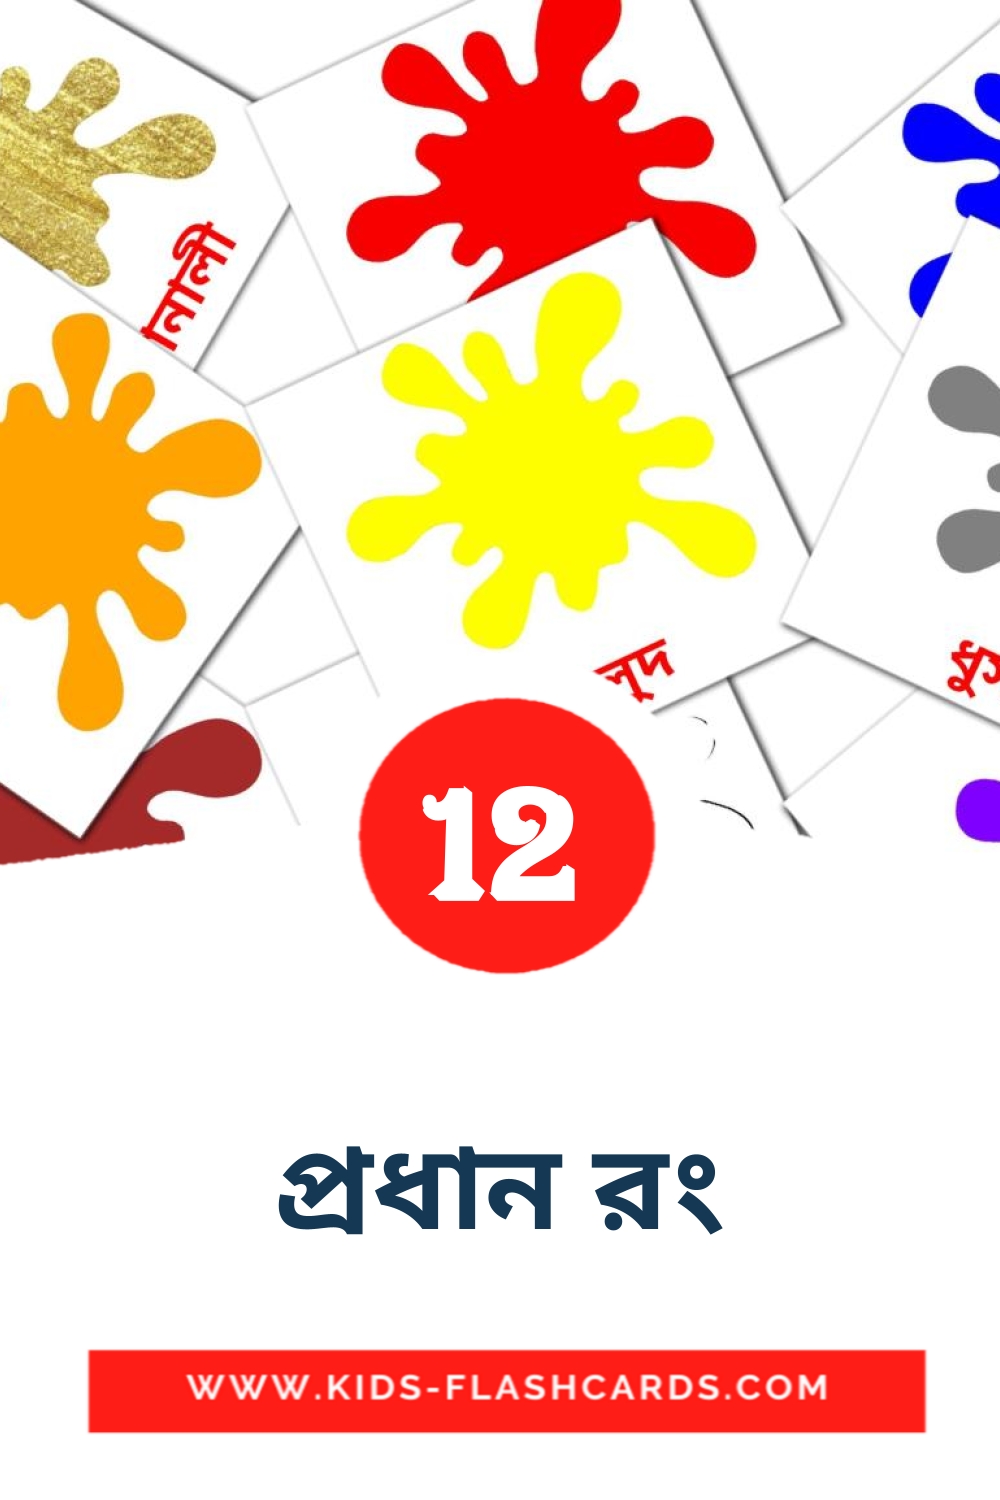 12 tarjetas didacticas de প্রধান রং para el jardín de infancia en bengalí